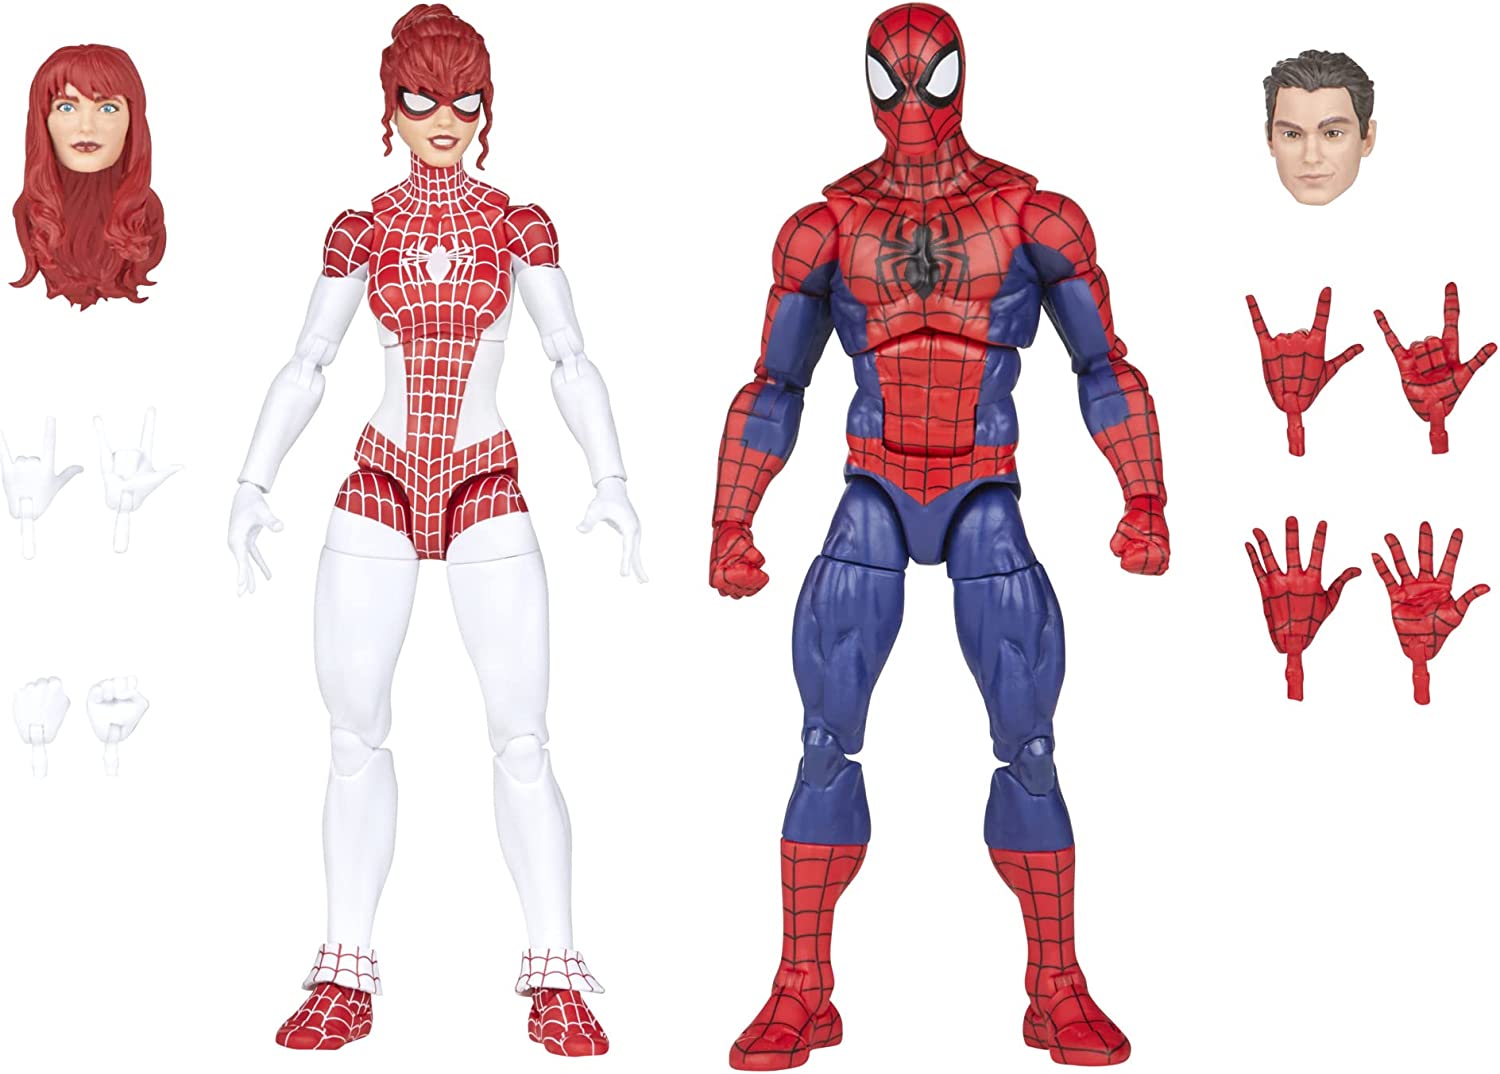 Marvel Legends Series - Spider-Man y Spinneret